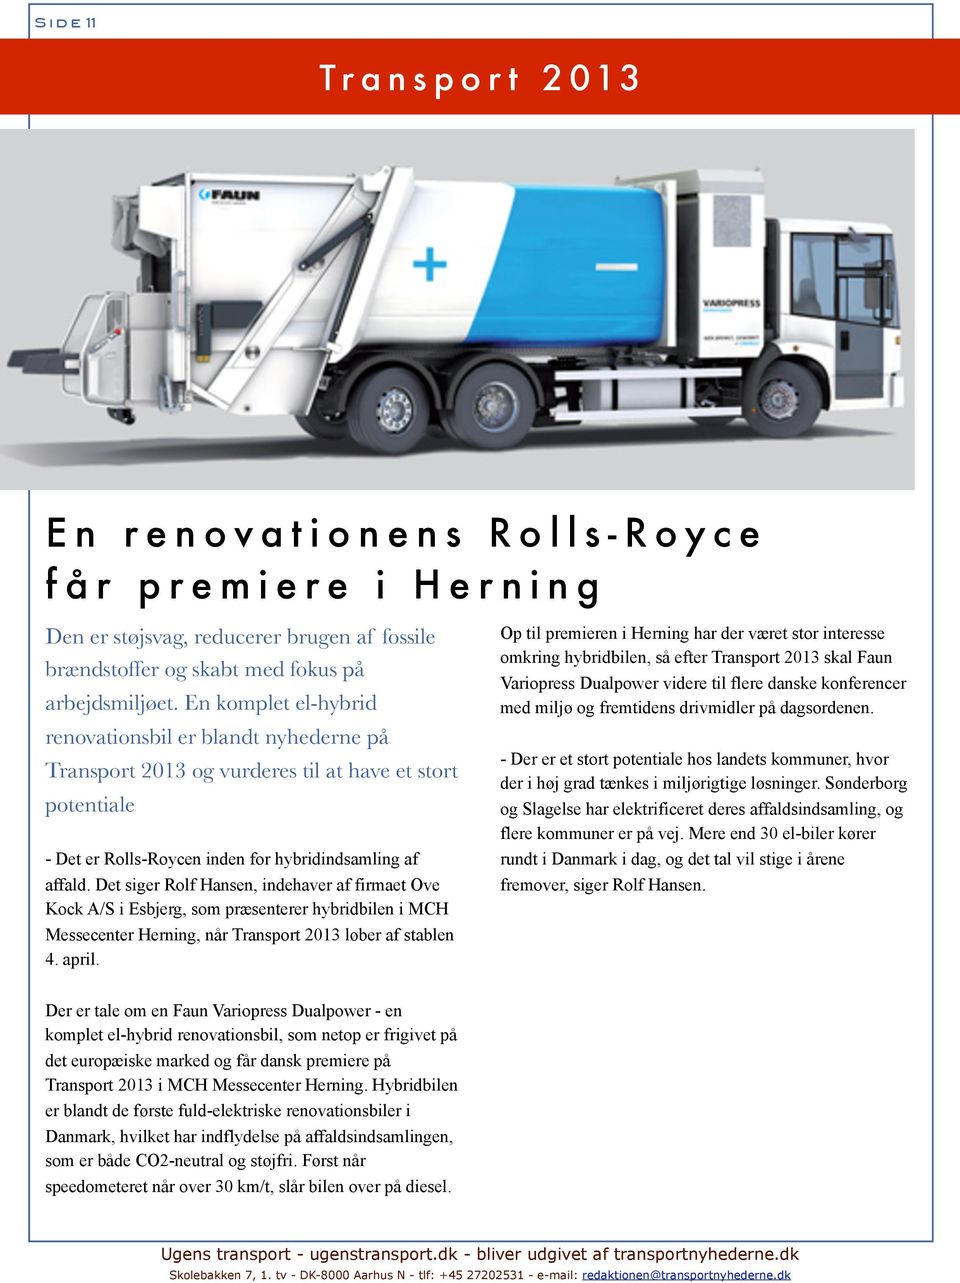 Det siger Rolf Hansen, indehaver af firmaet Ove Kock A/S i Esbjerg, som præsenterer hybridbilen i MCH Messecenter Herning, når Transport 2013 løber af stablen 4. april.